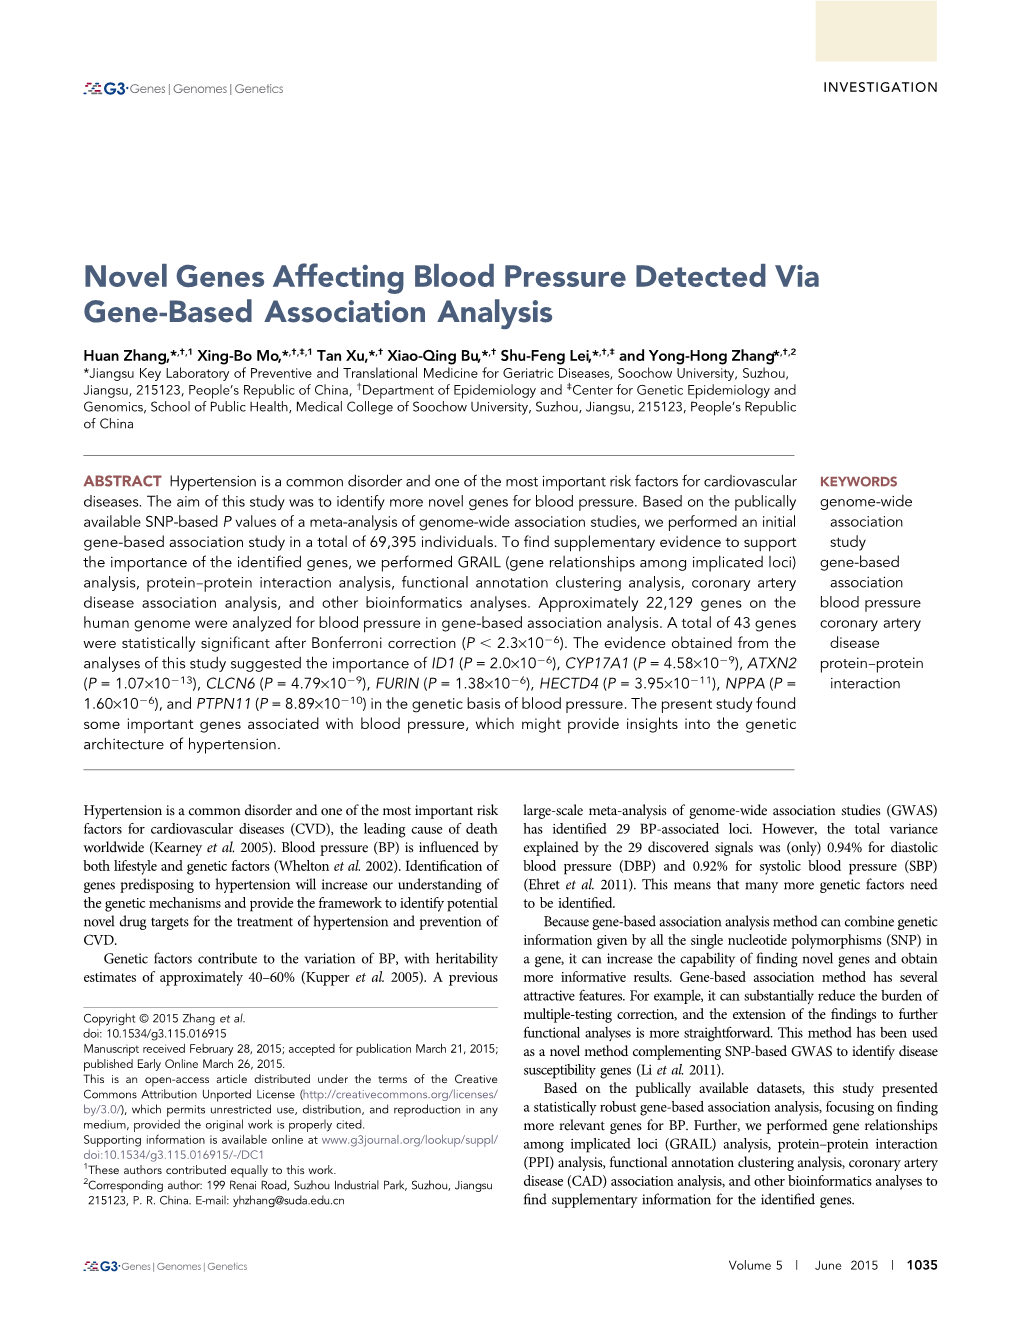 Novel Genes Affecting Blood Pressure Detected Via Gene-Based Association Analysis